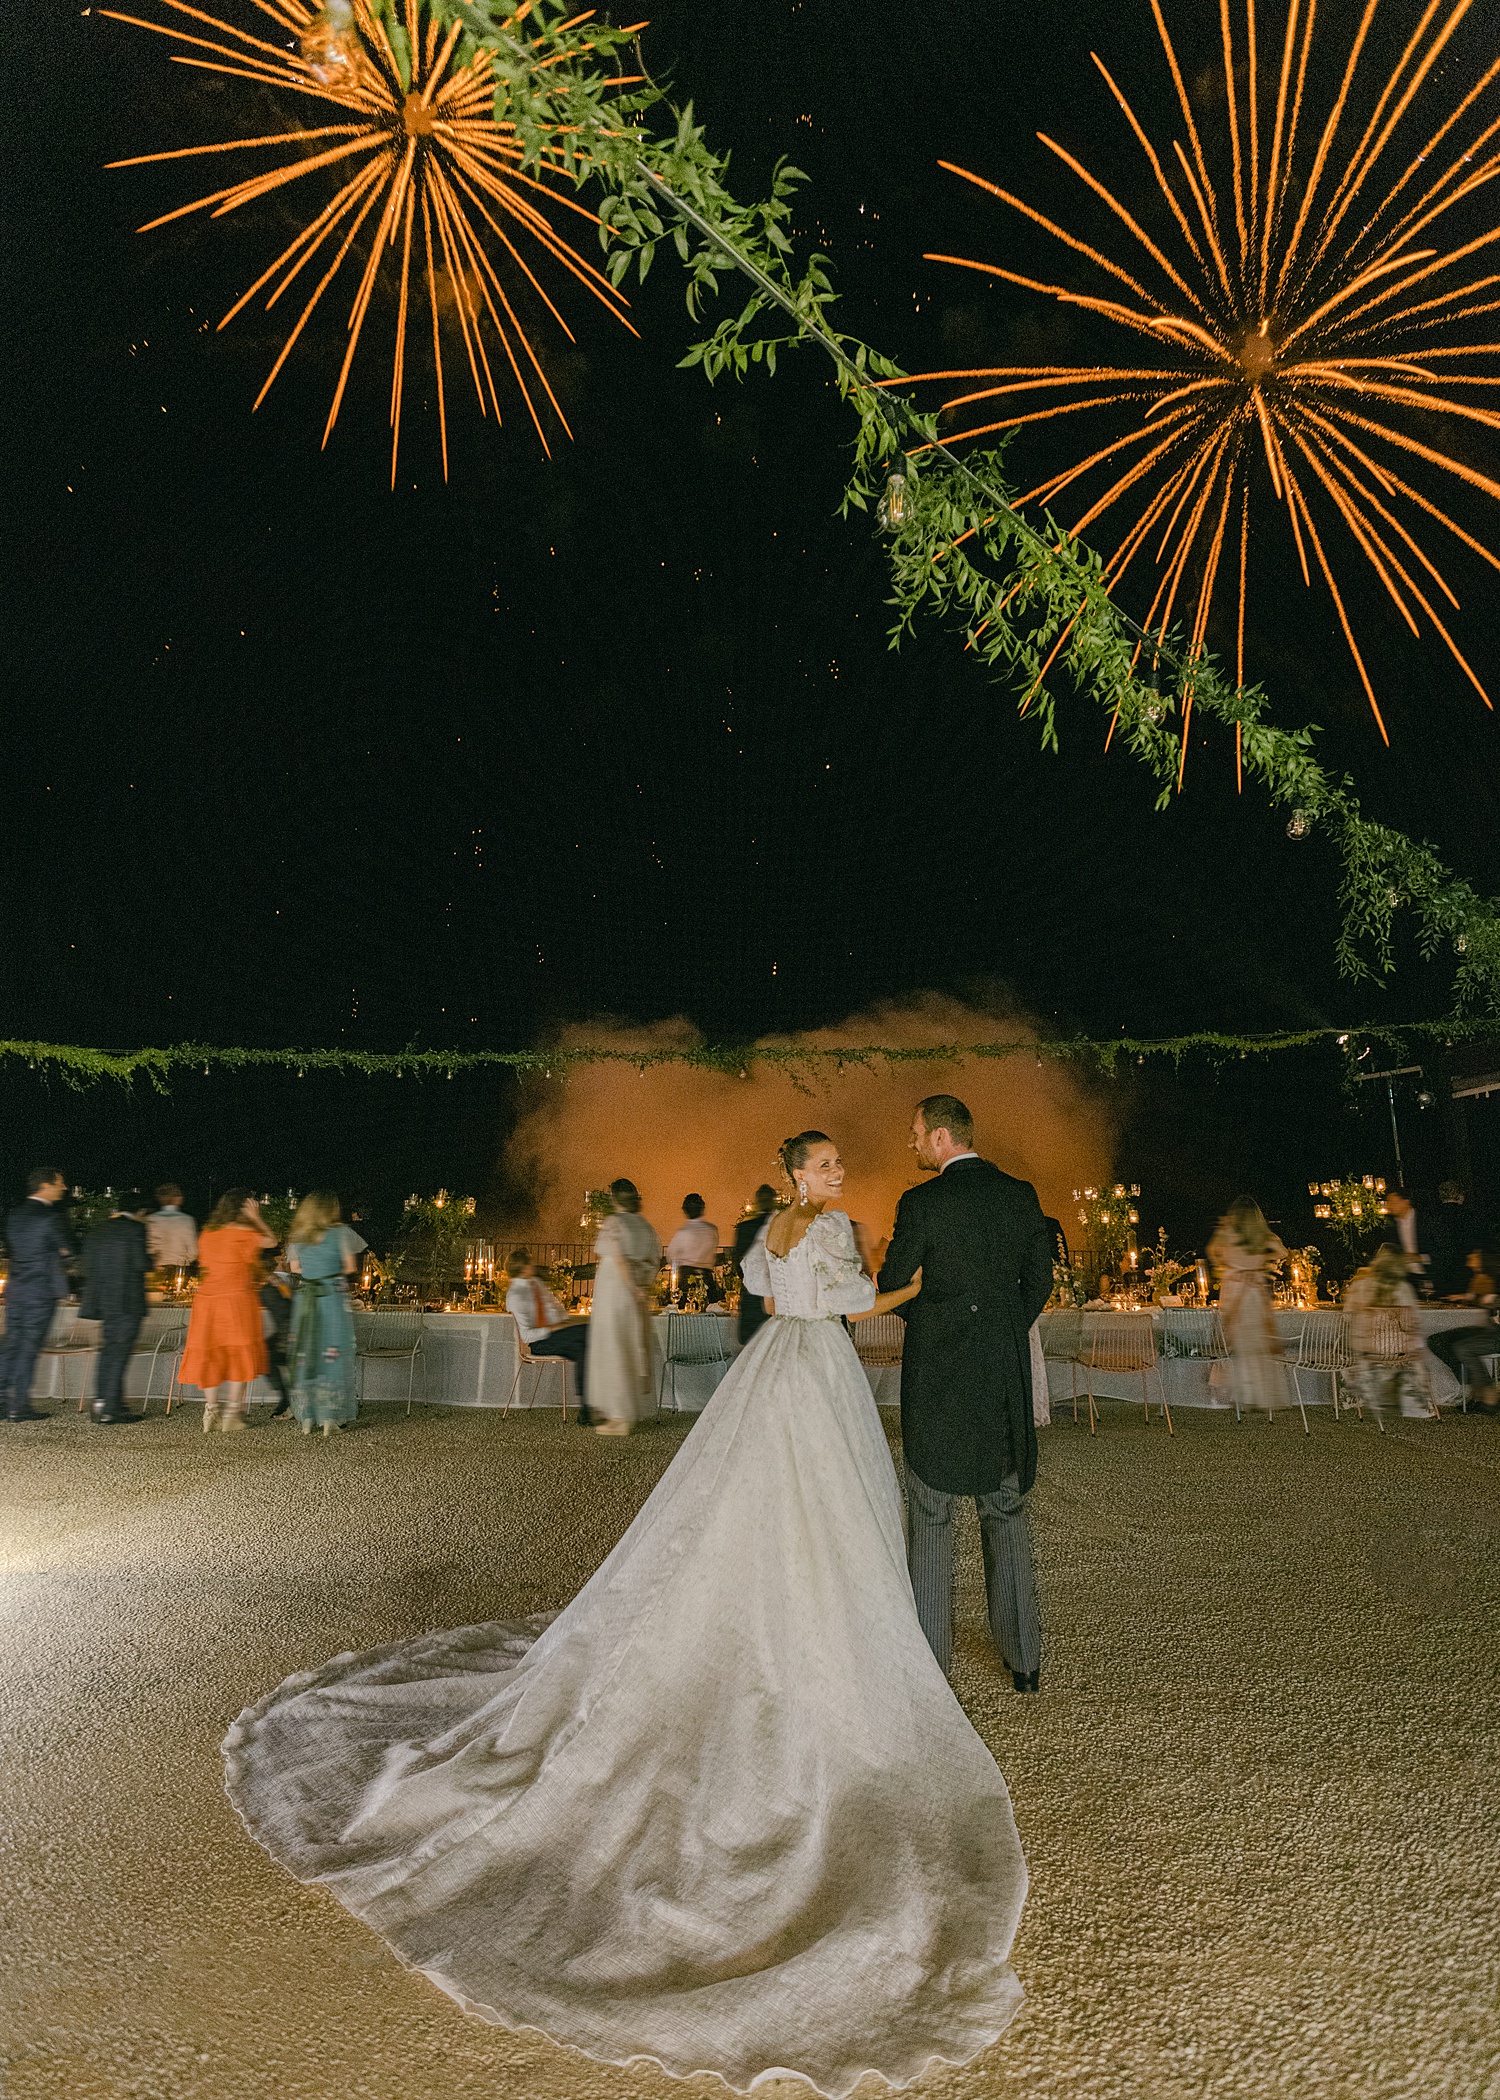 Irene Forte and Felix Winkler - Sicily Wedding - Fireworks